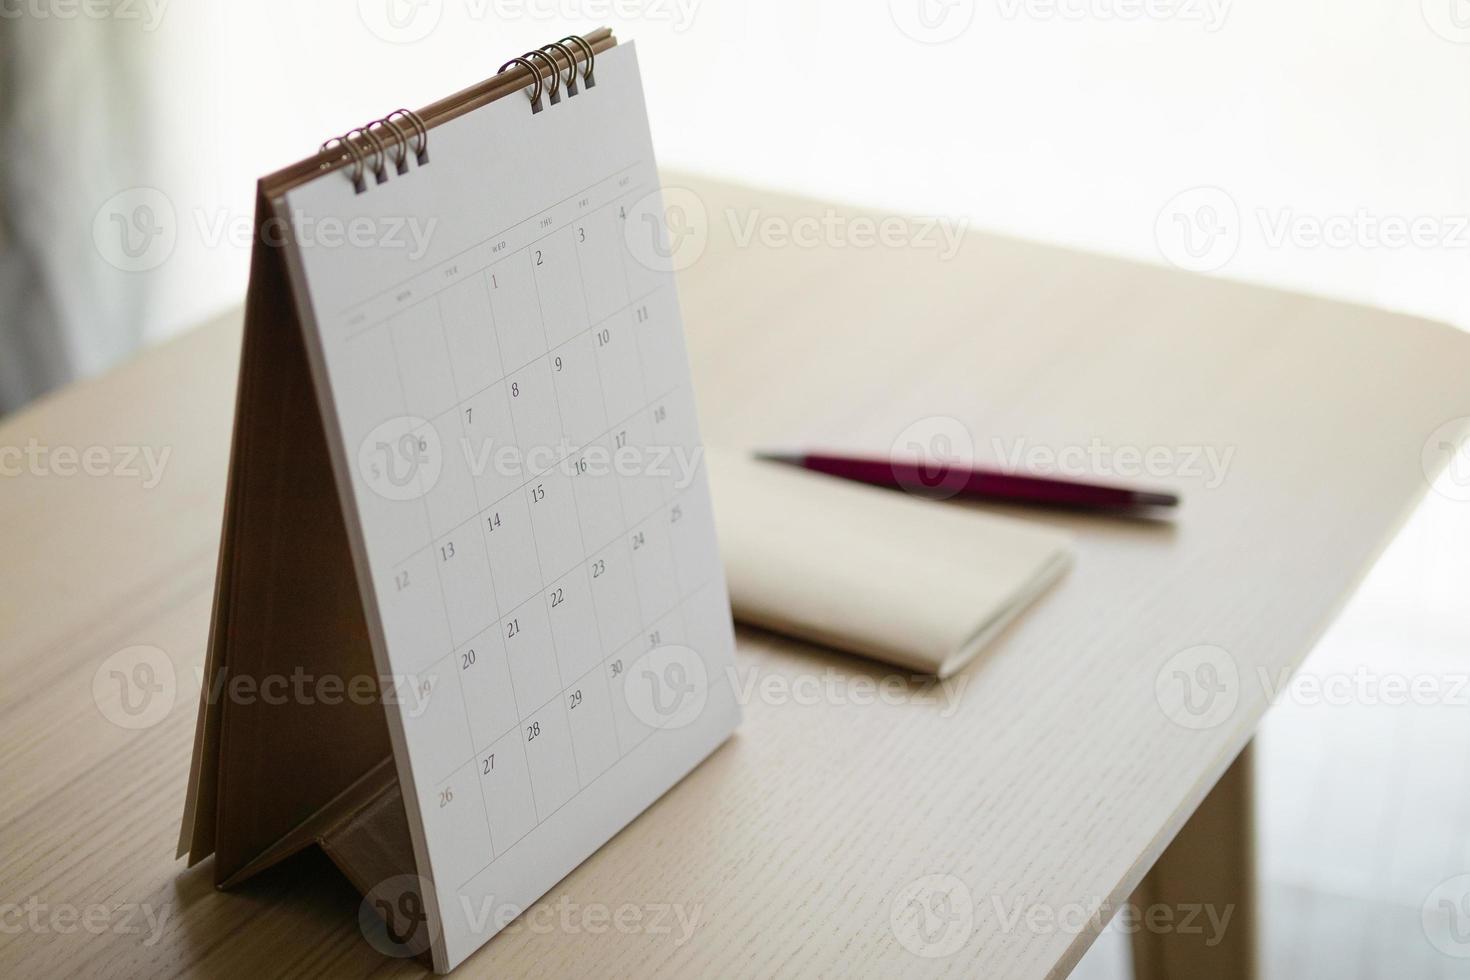 kalender sida stänga upp på trä tabell bakgrund med penna och anteckningsbok företag planera utnämning möte begrepp foto